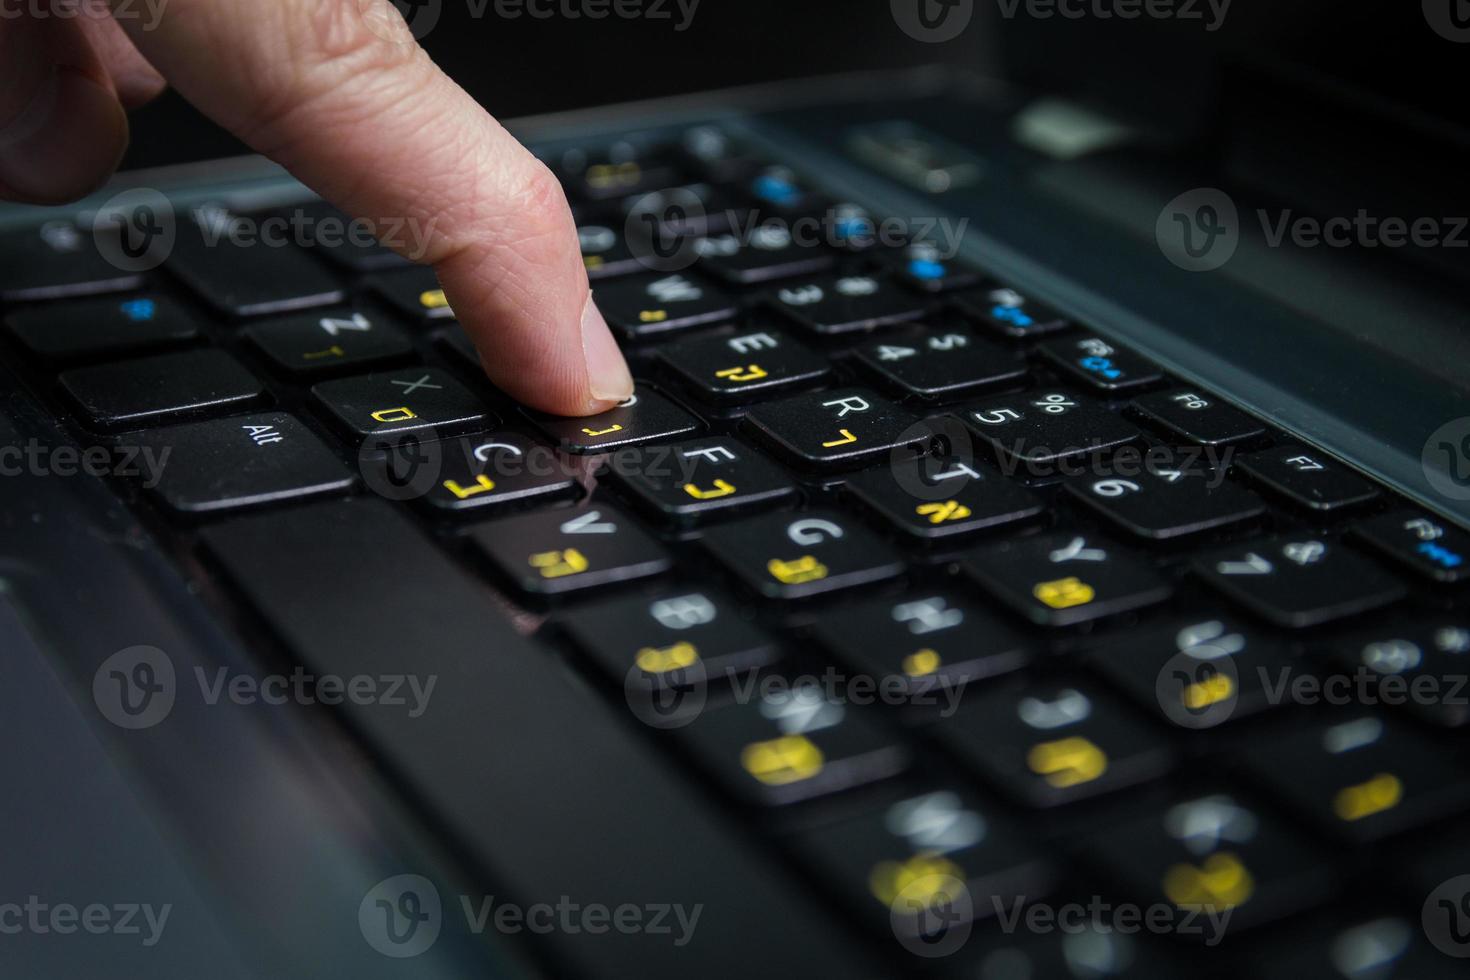 man typt op een toetsenbord met letters in het hebreeuws en engels foto